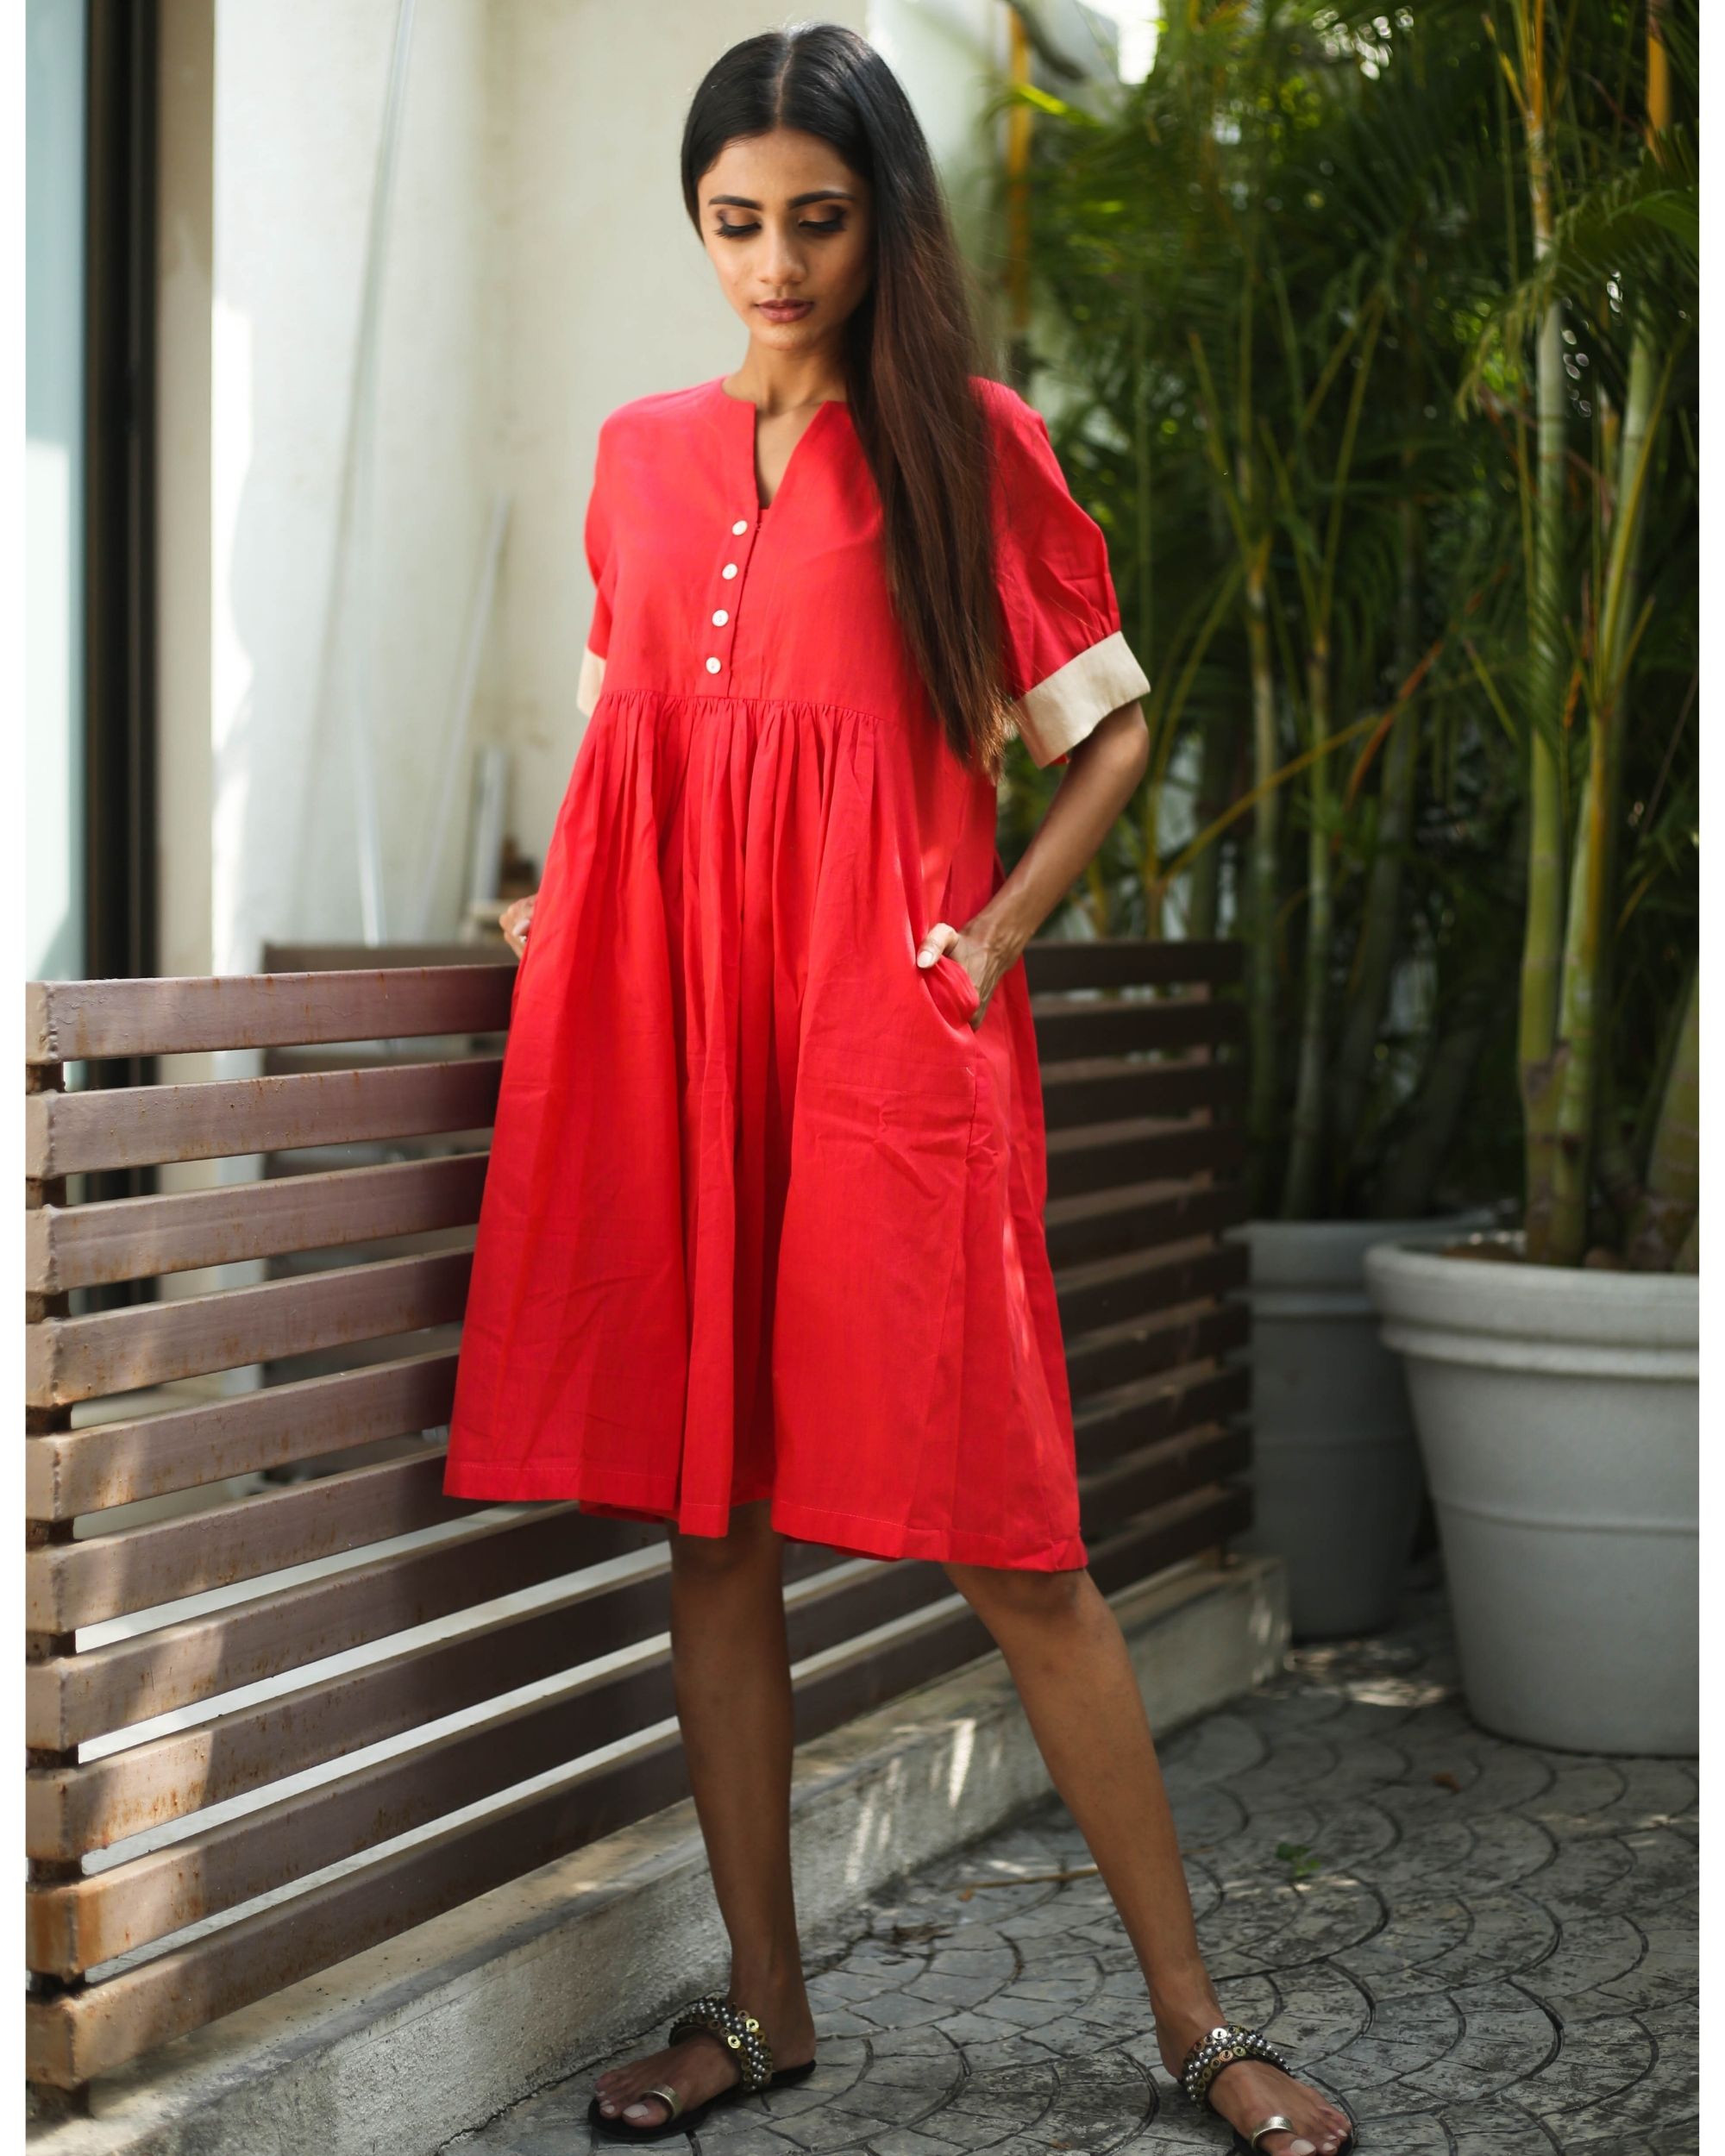 Carrot red dress by Shreetatvam | The Secret Label